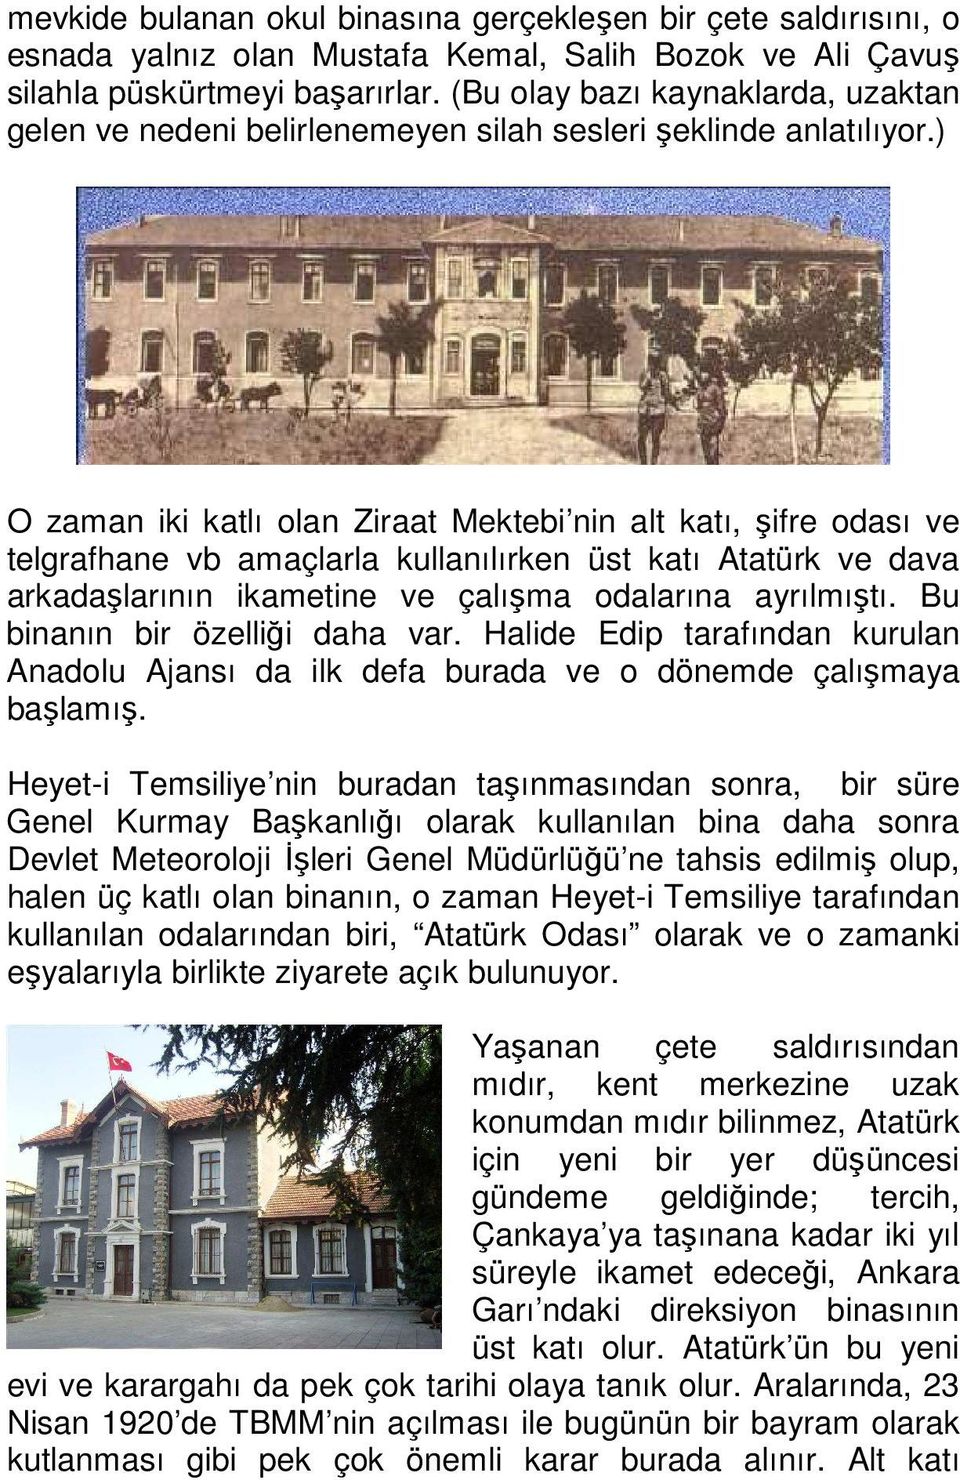 ) O zaman iki katlı olan Ziraat Mektebi nin alt katı, şifre odası ve telgrafhane vb amaçlarla kullanılırken üst katı Atatürk ve dava arkadaşlarının ikametine ve çalışma odalarına ayrılmıştı.